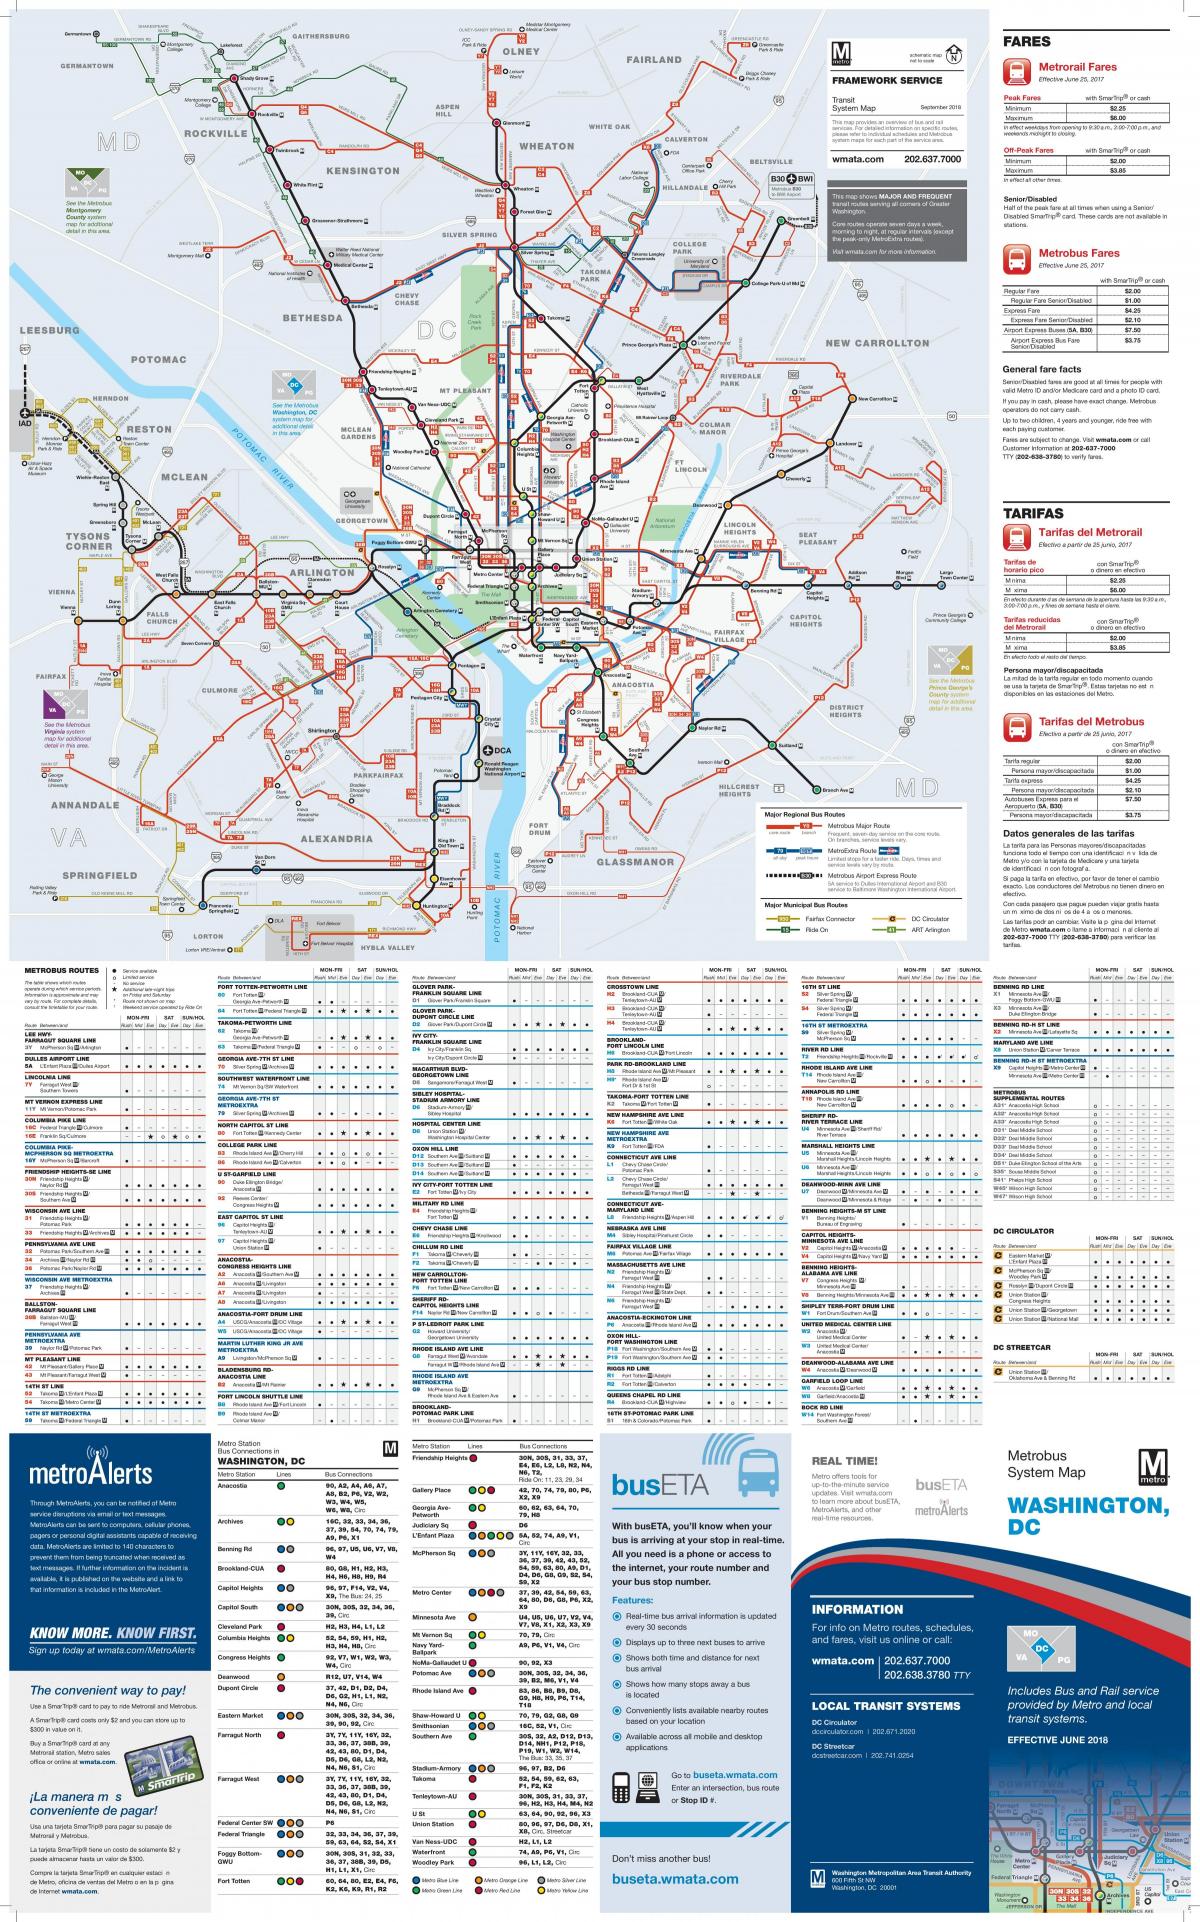 Karte des Busbahnhofs von Washington DC